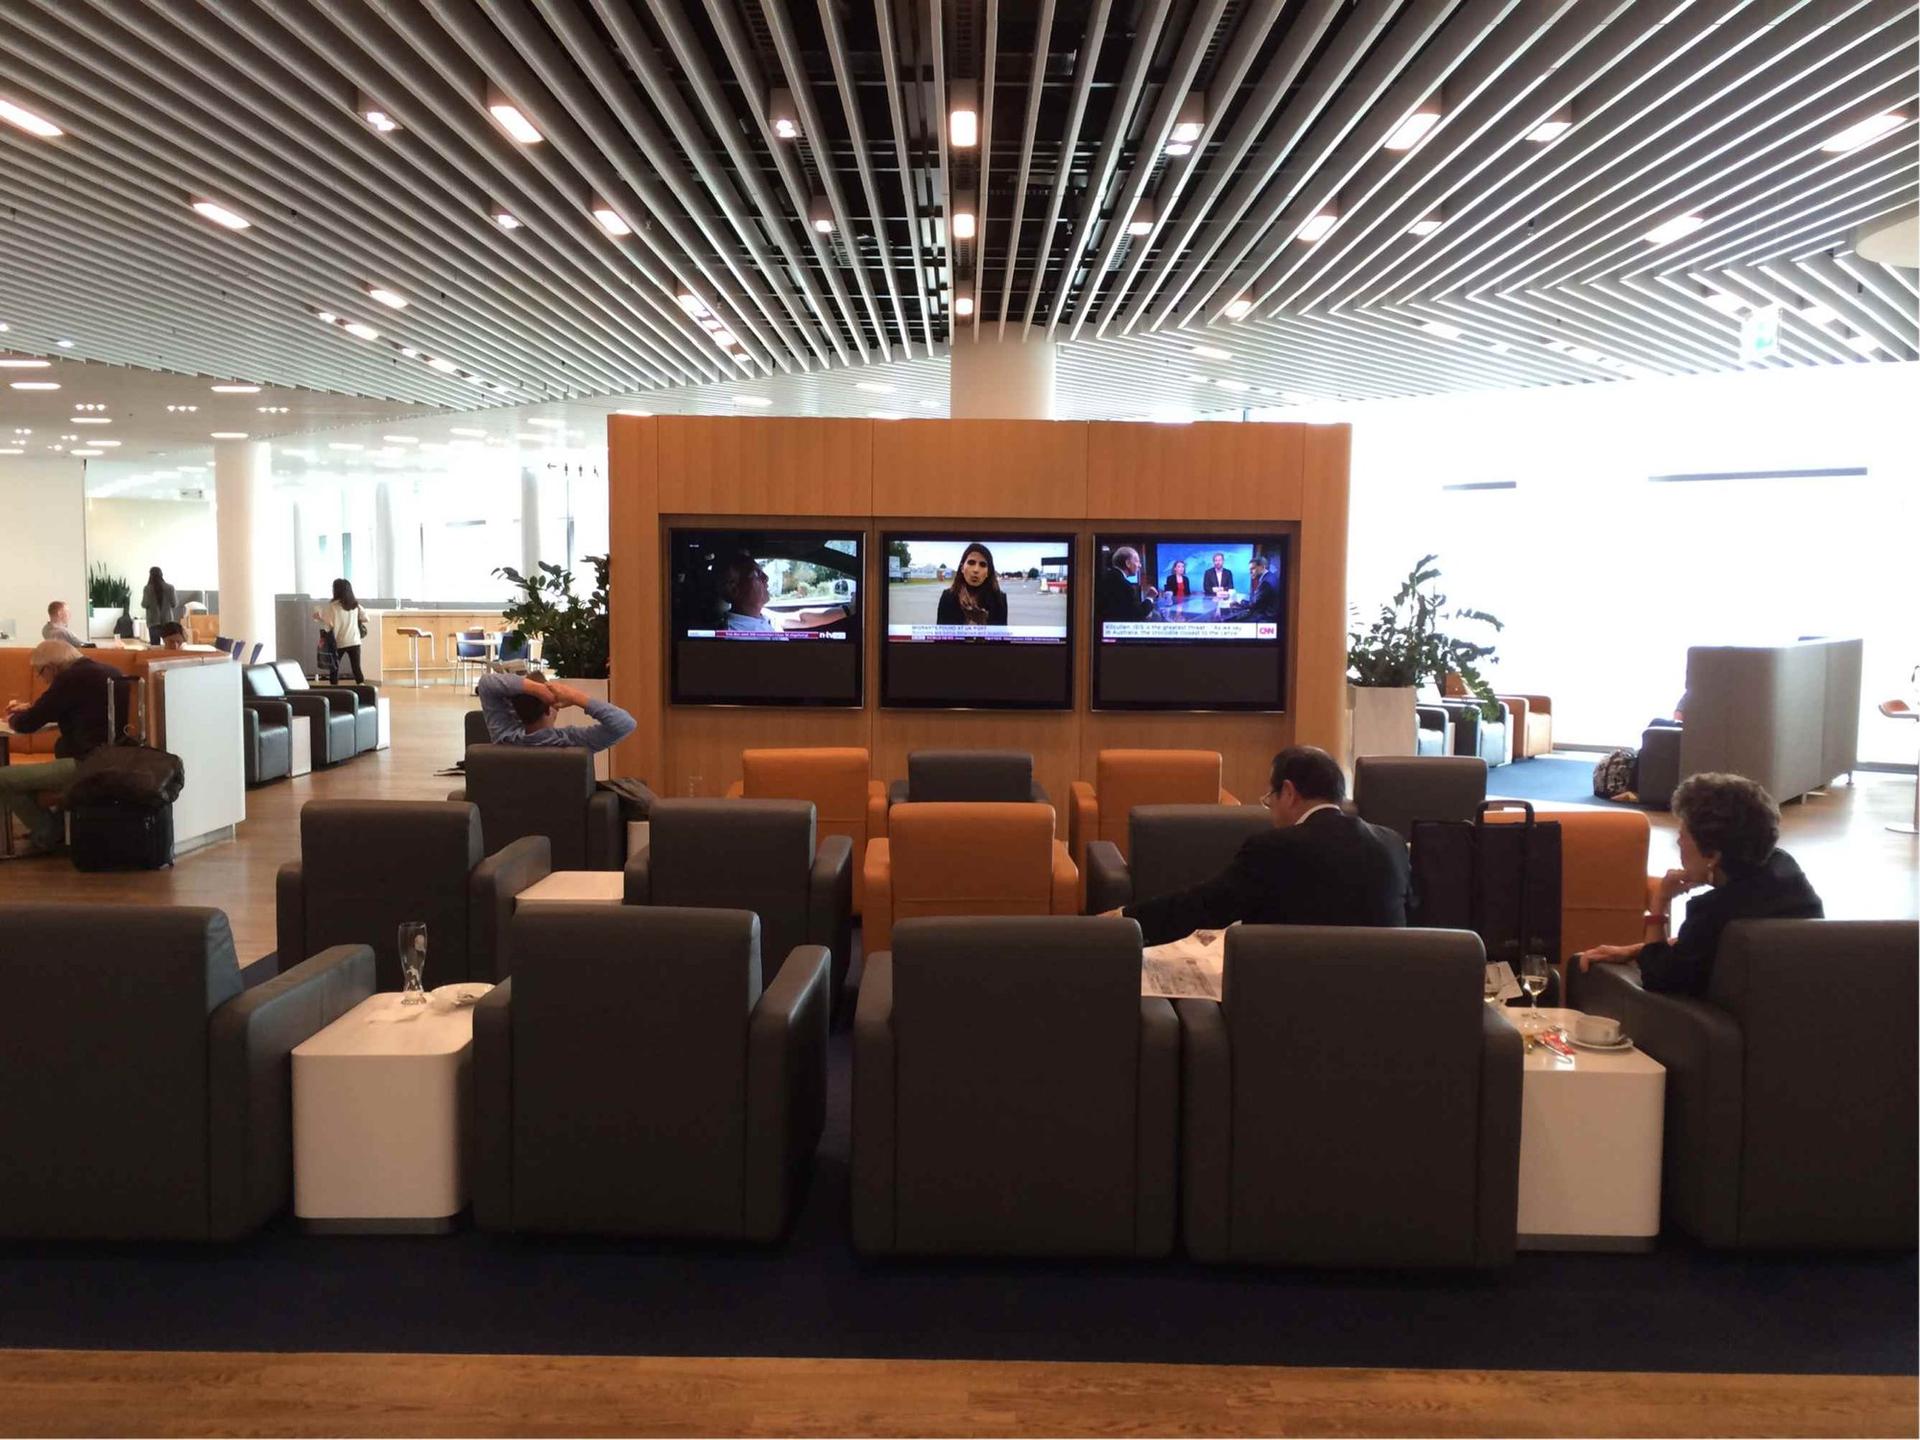 Lufthansa Business Lounge (Non-Schengen) image 7 of 14